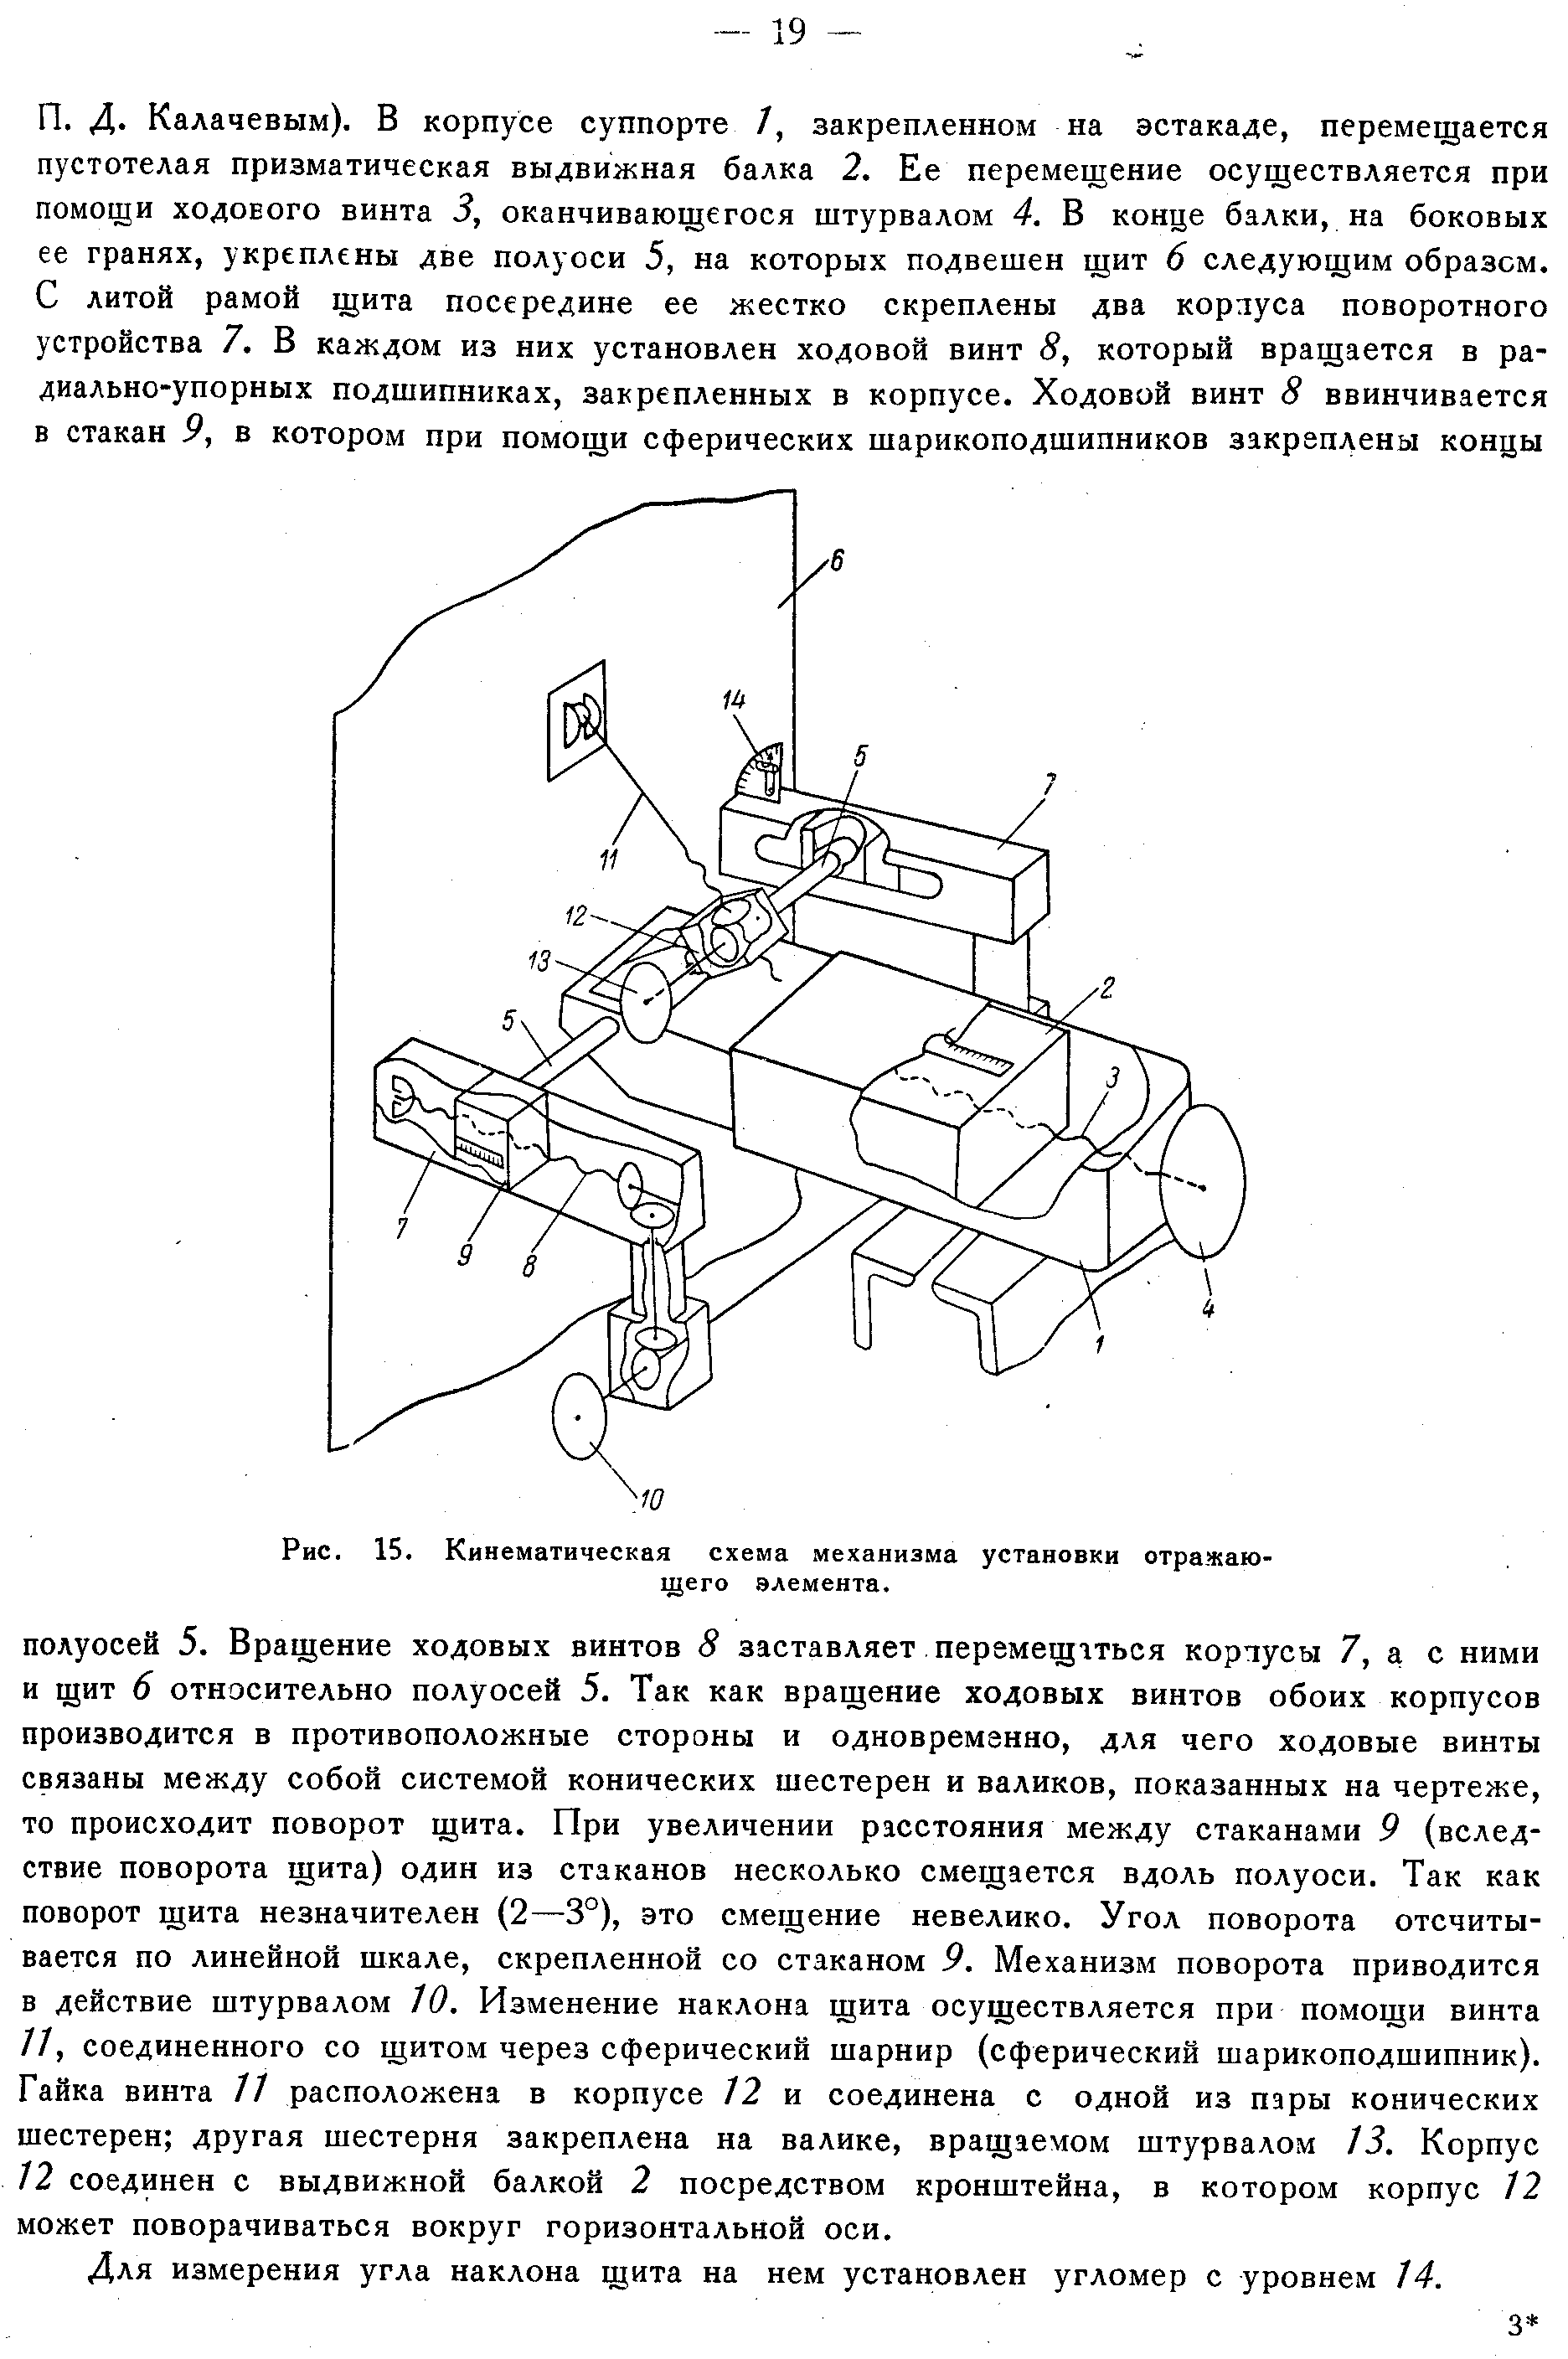 Хайкин С.Э. и др.,стр.16